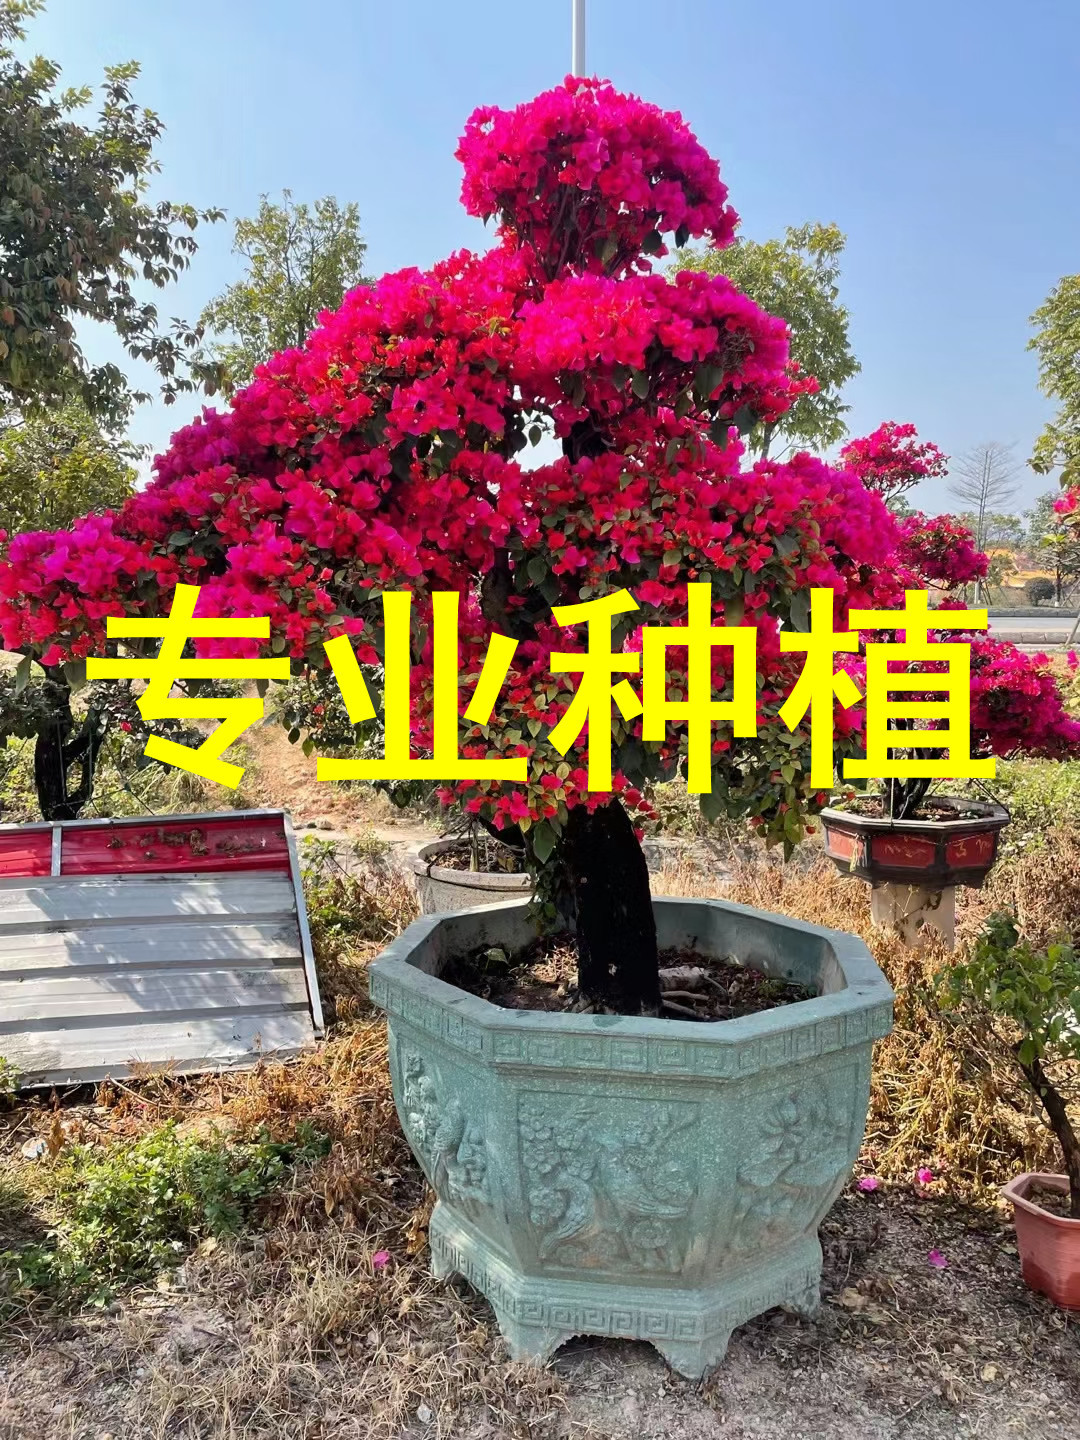 四季红中国红同安红造型三角梅树桩盆景 勒杜鹃九重葛叶子花老桩